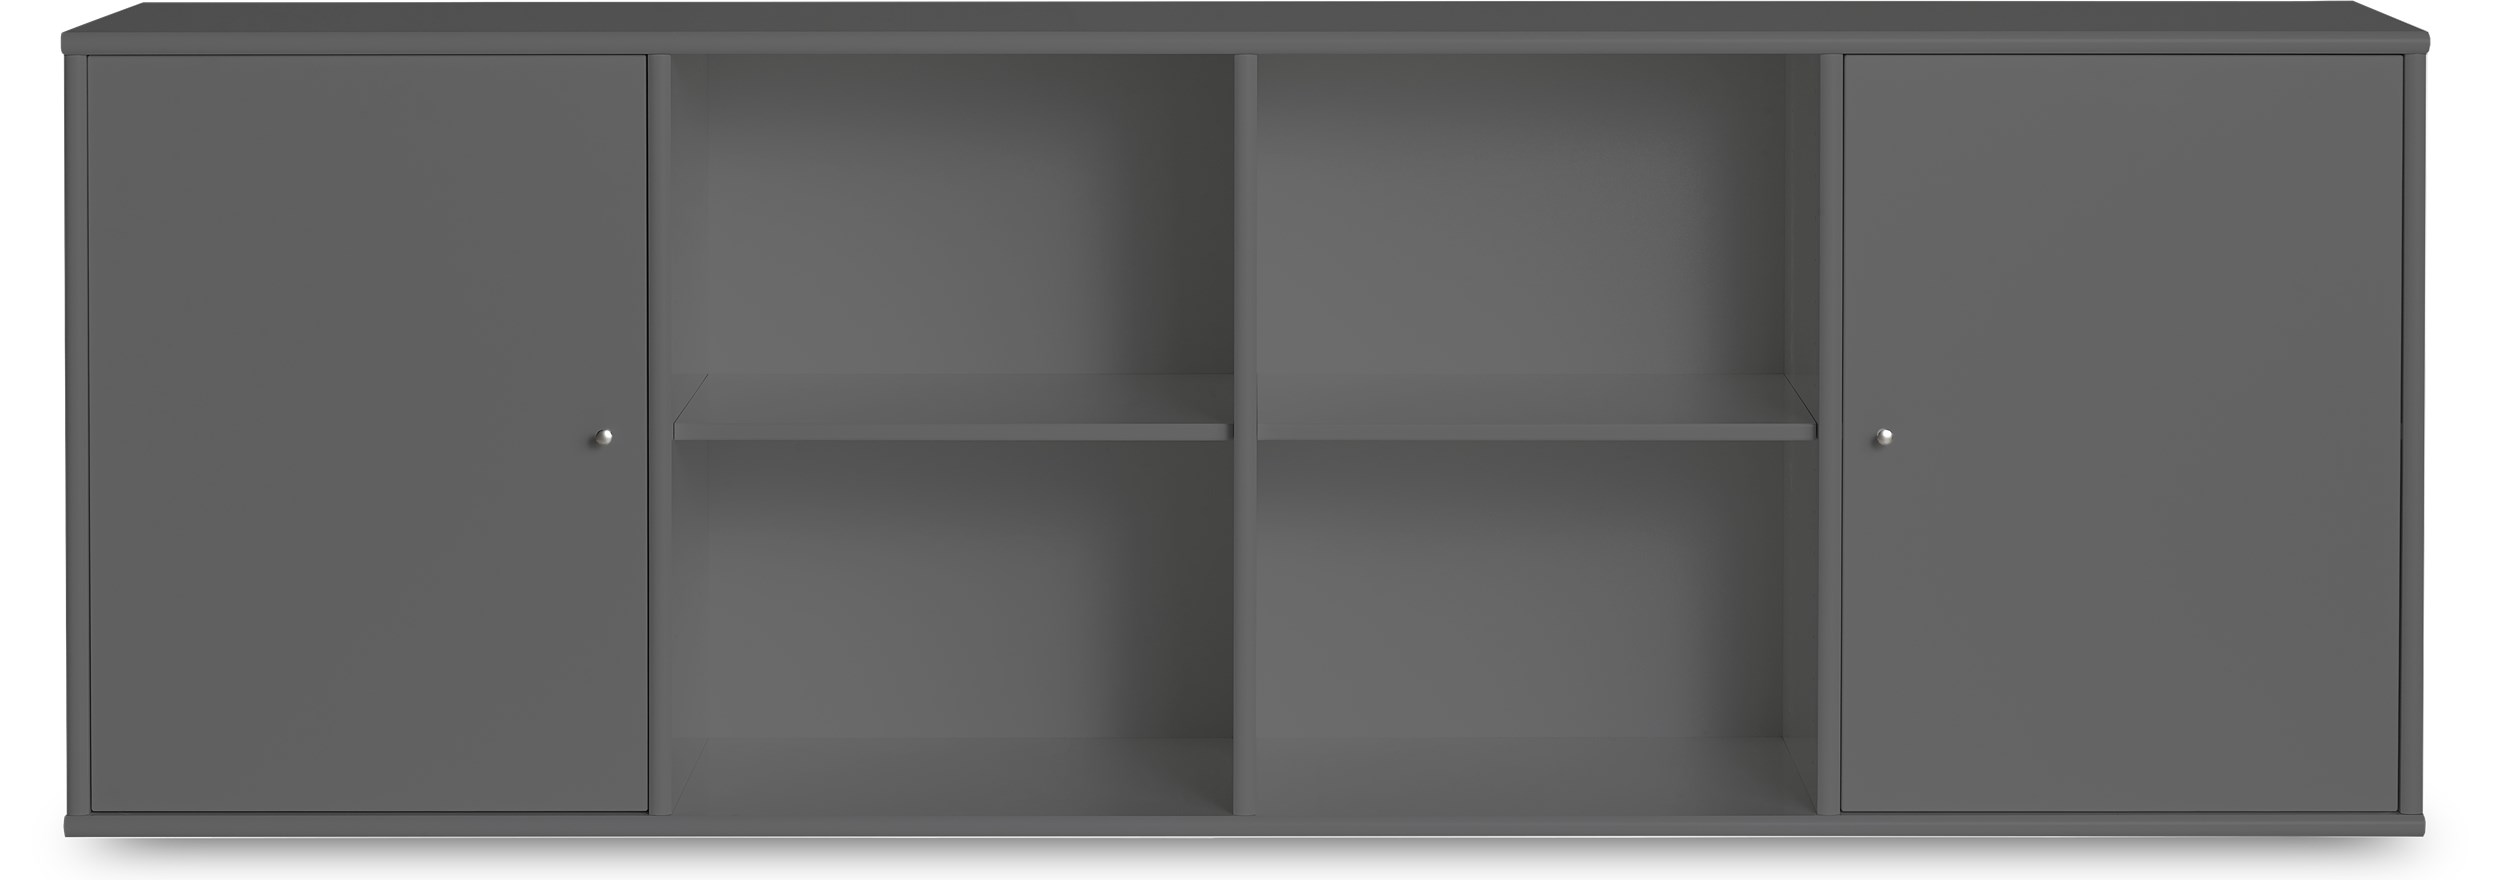 Mistral Classic Skænk med 2 låger og åbne hylder i midten mørkegrå